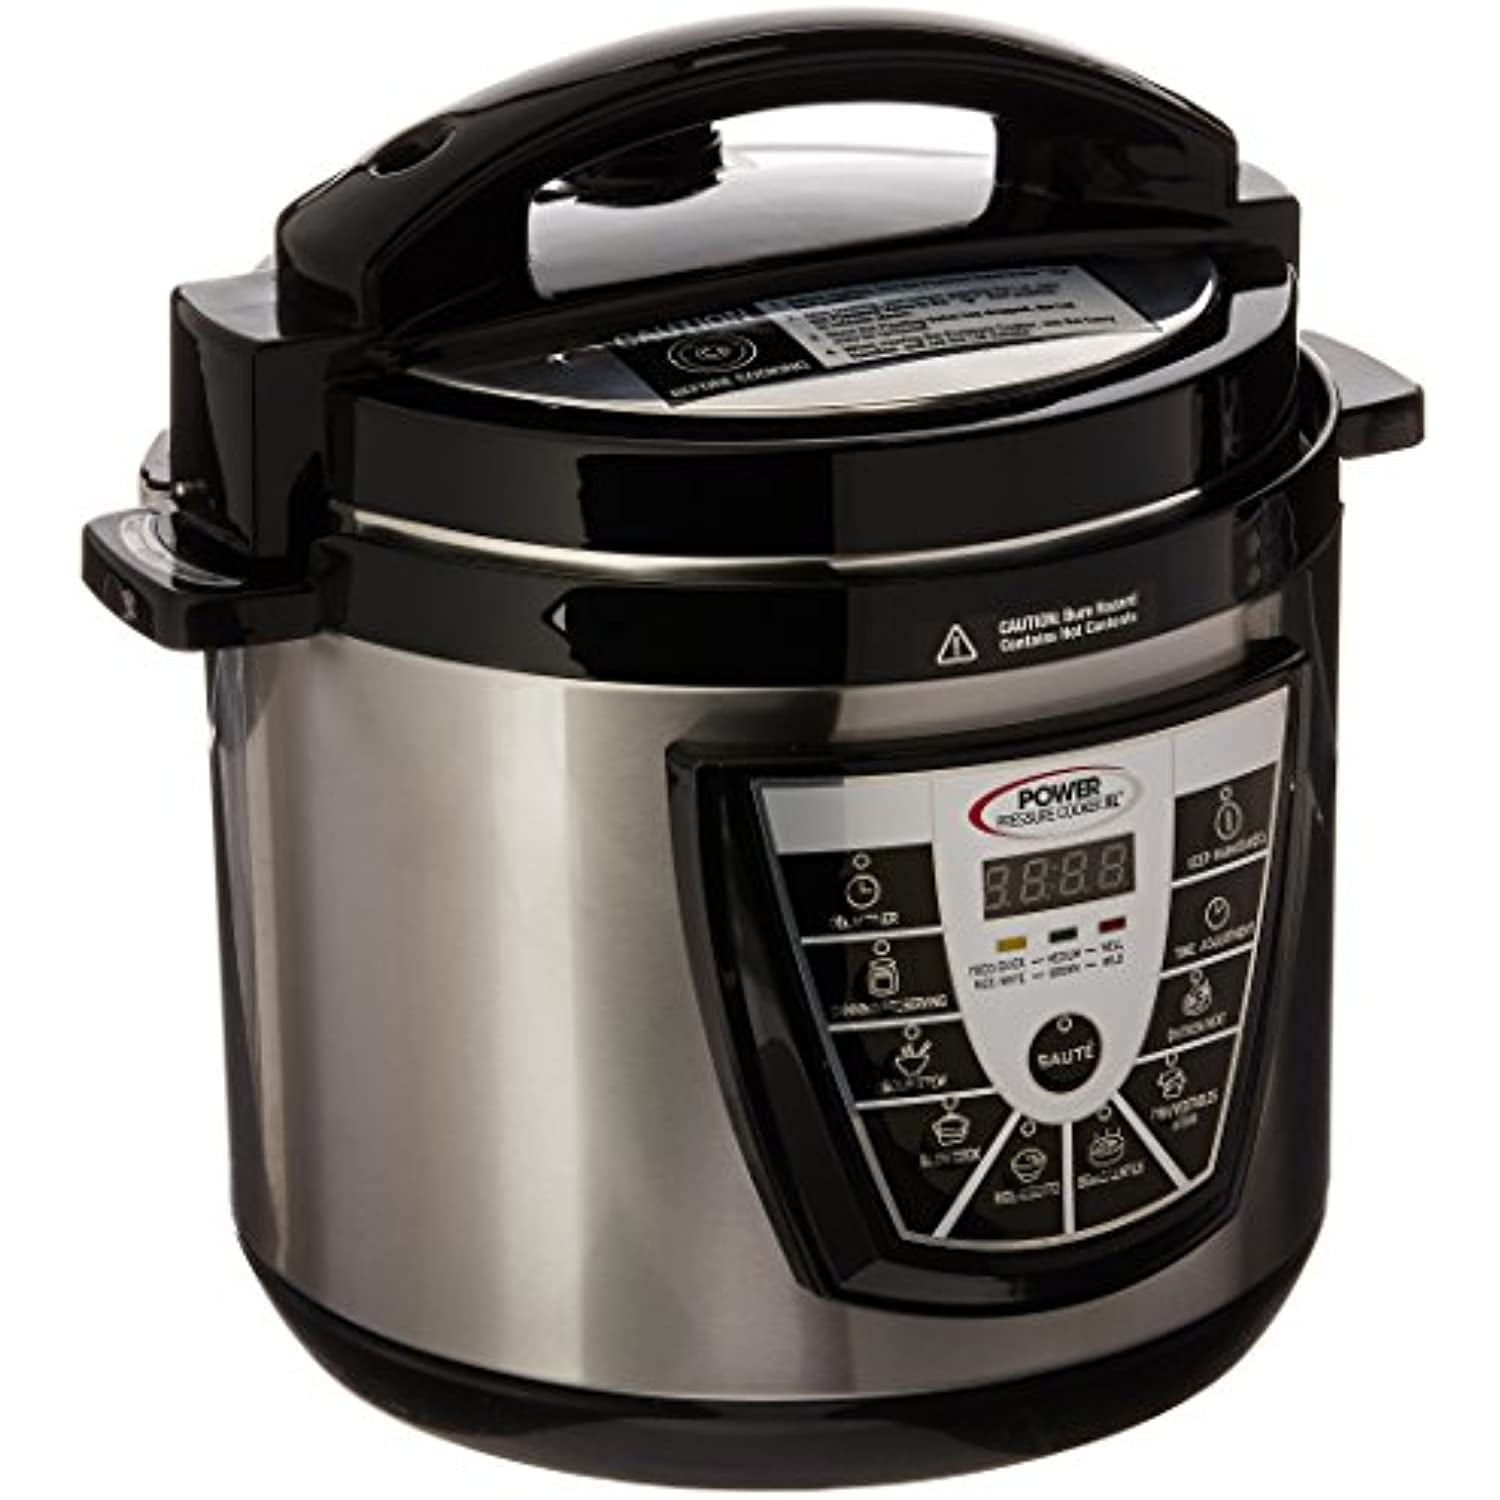 Power Pressure Cooker XL, 6-qt